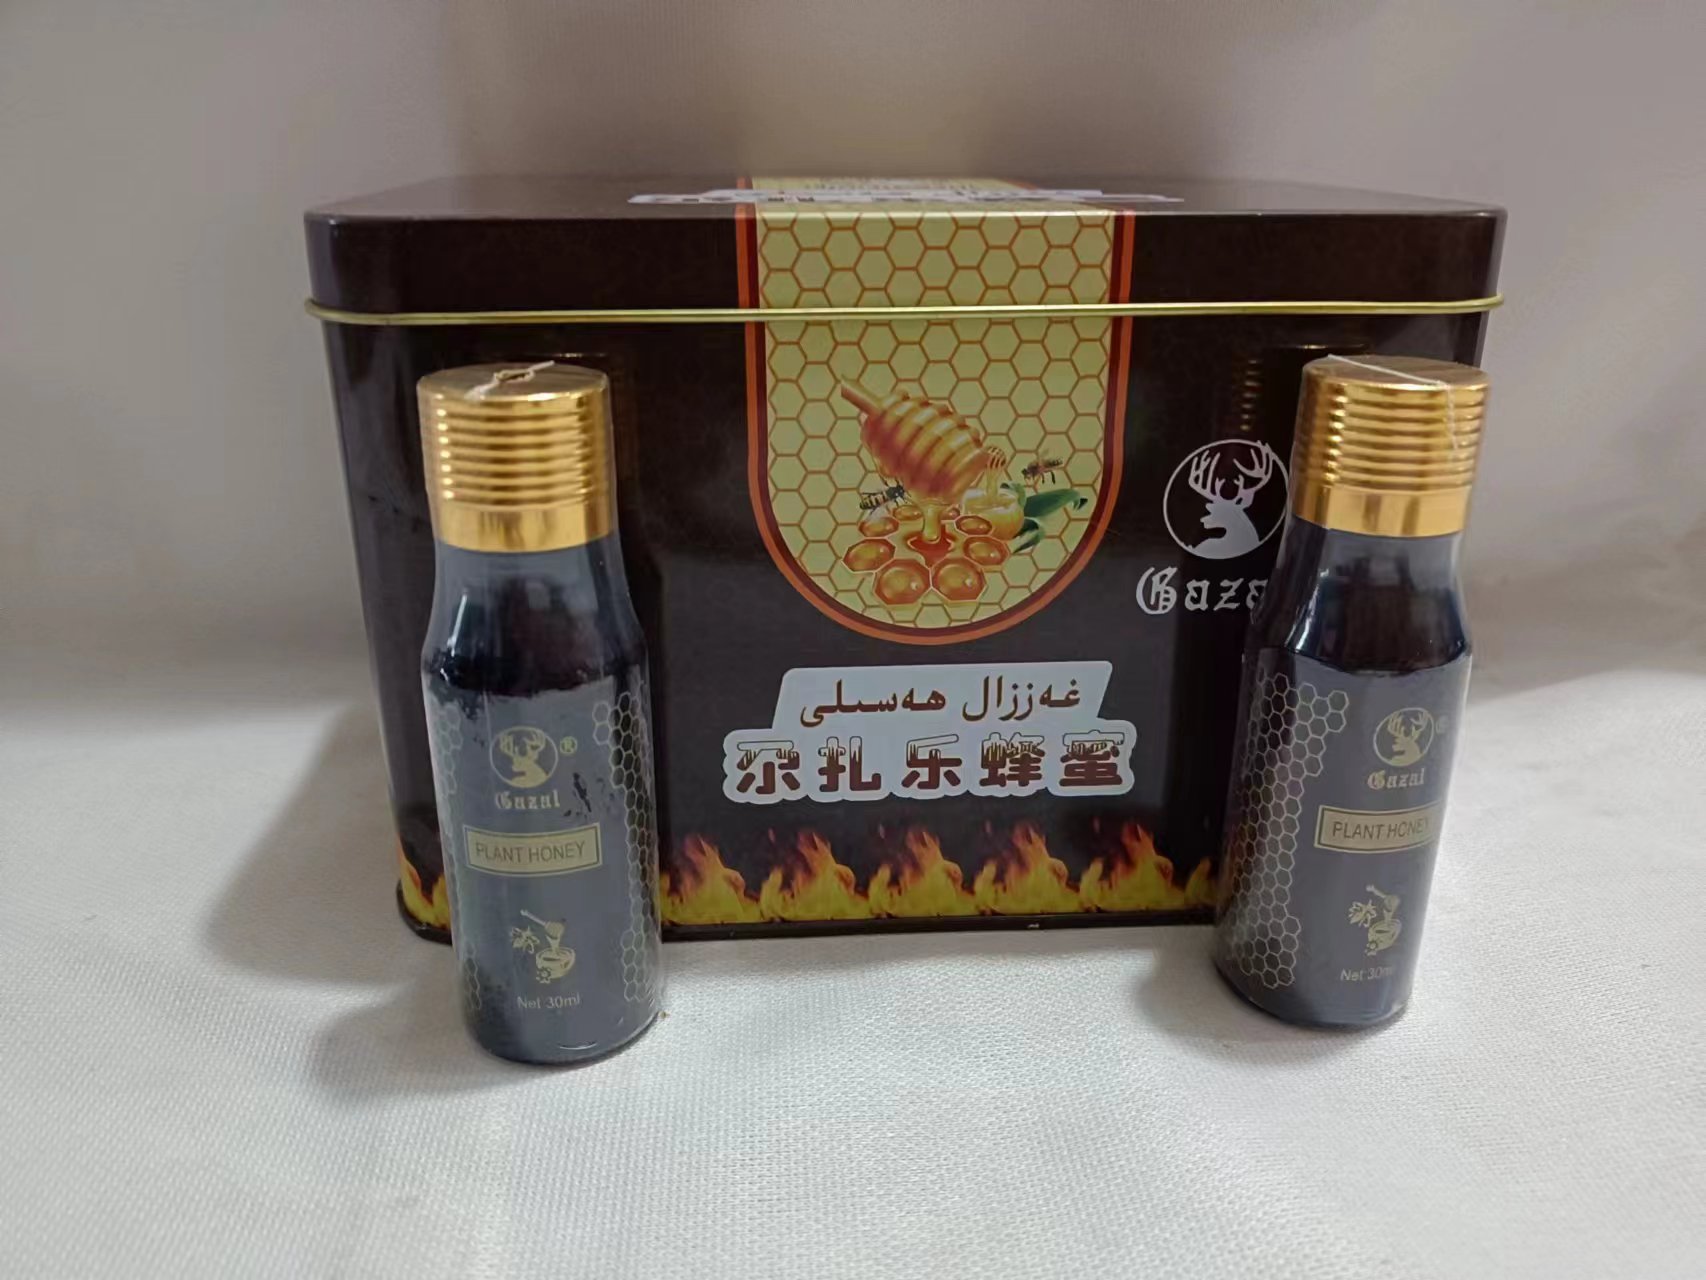 新疆尕扎乐植物蜂蜜gazal hasal新疆尕扎乐蜂蜜补身营养15瓶